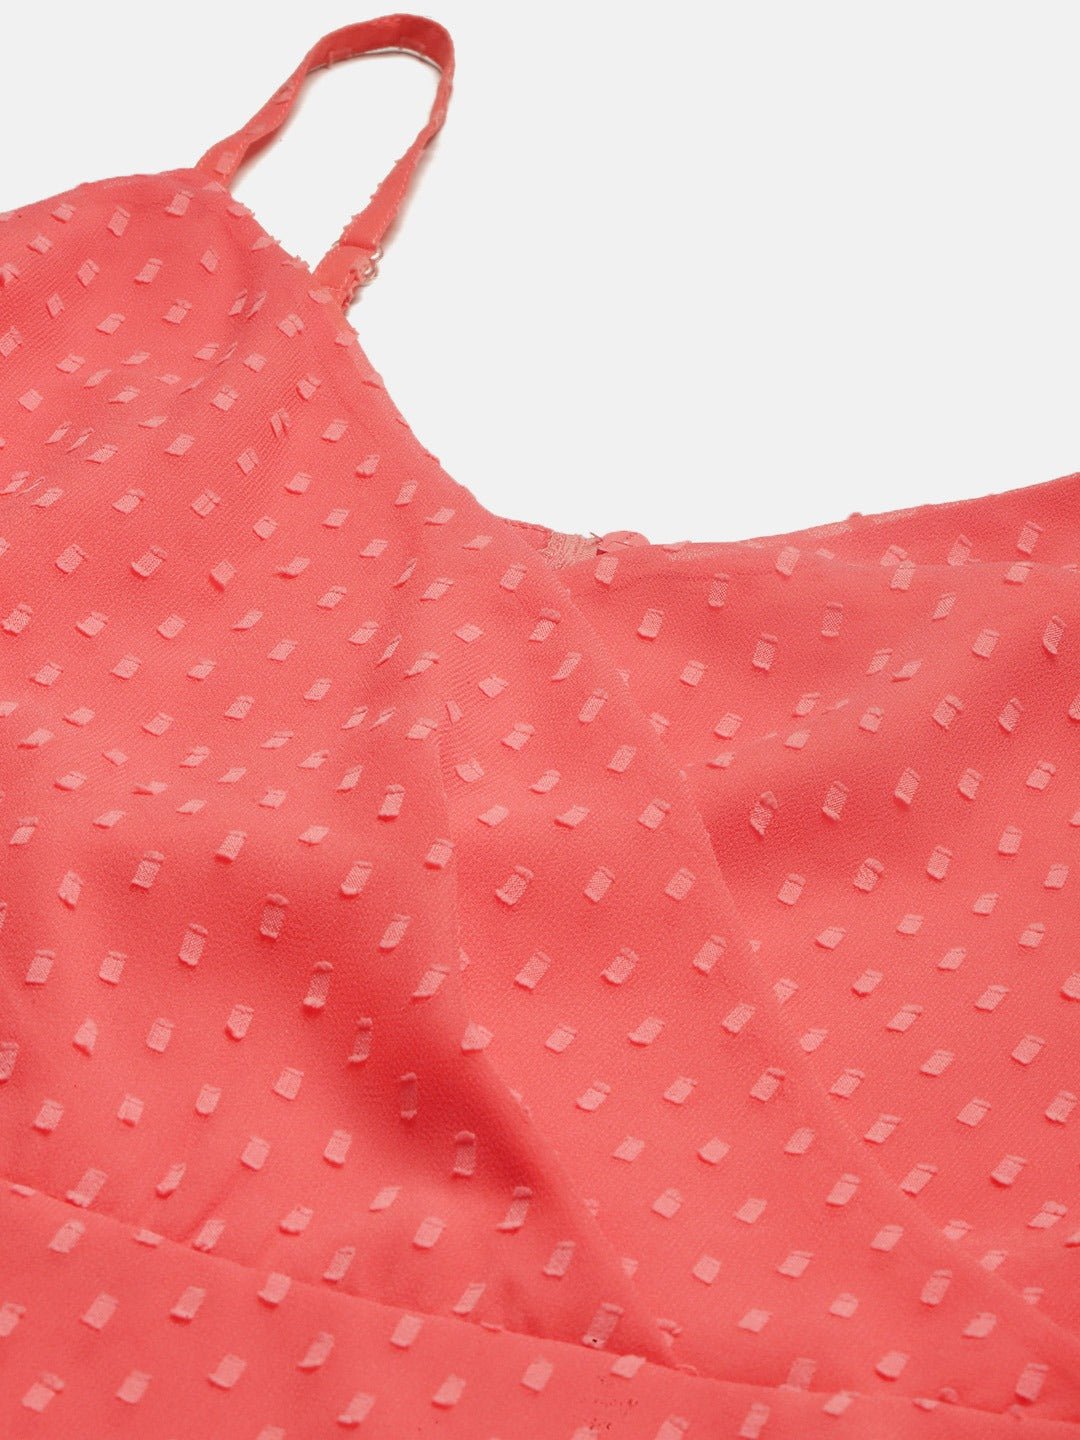 Folk Republic Women Pink Dot Pattern Fit and Flare Mini Dress - #folk republic#